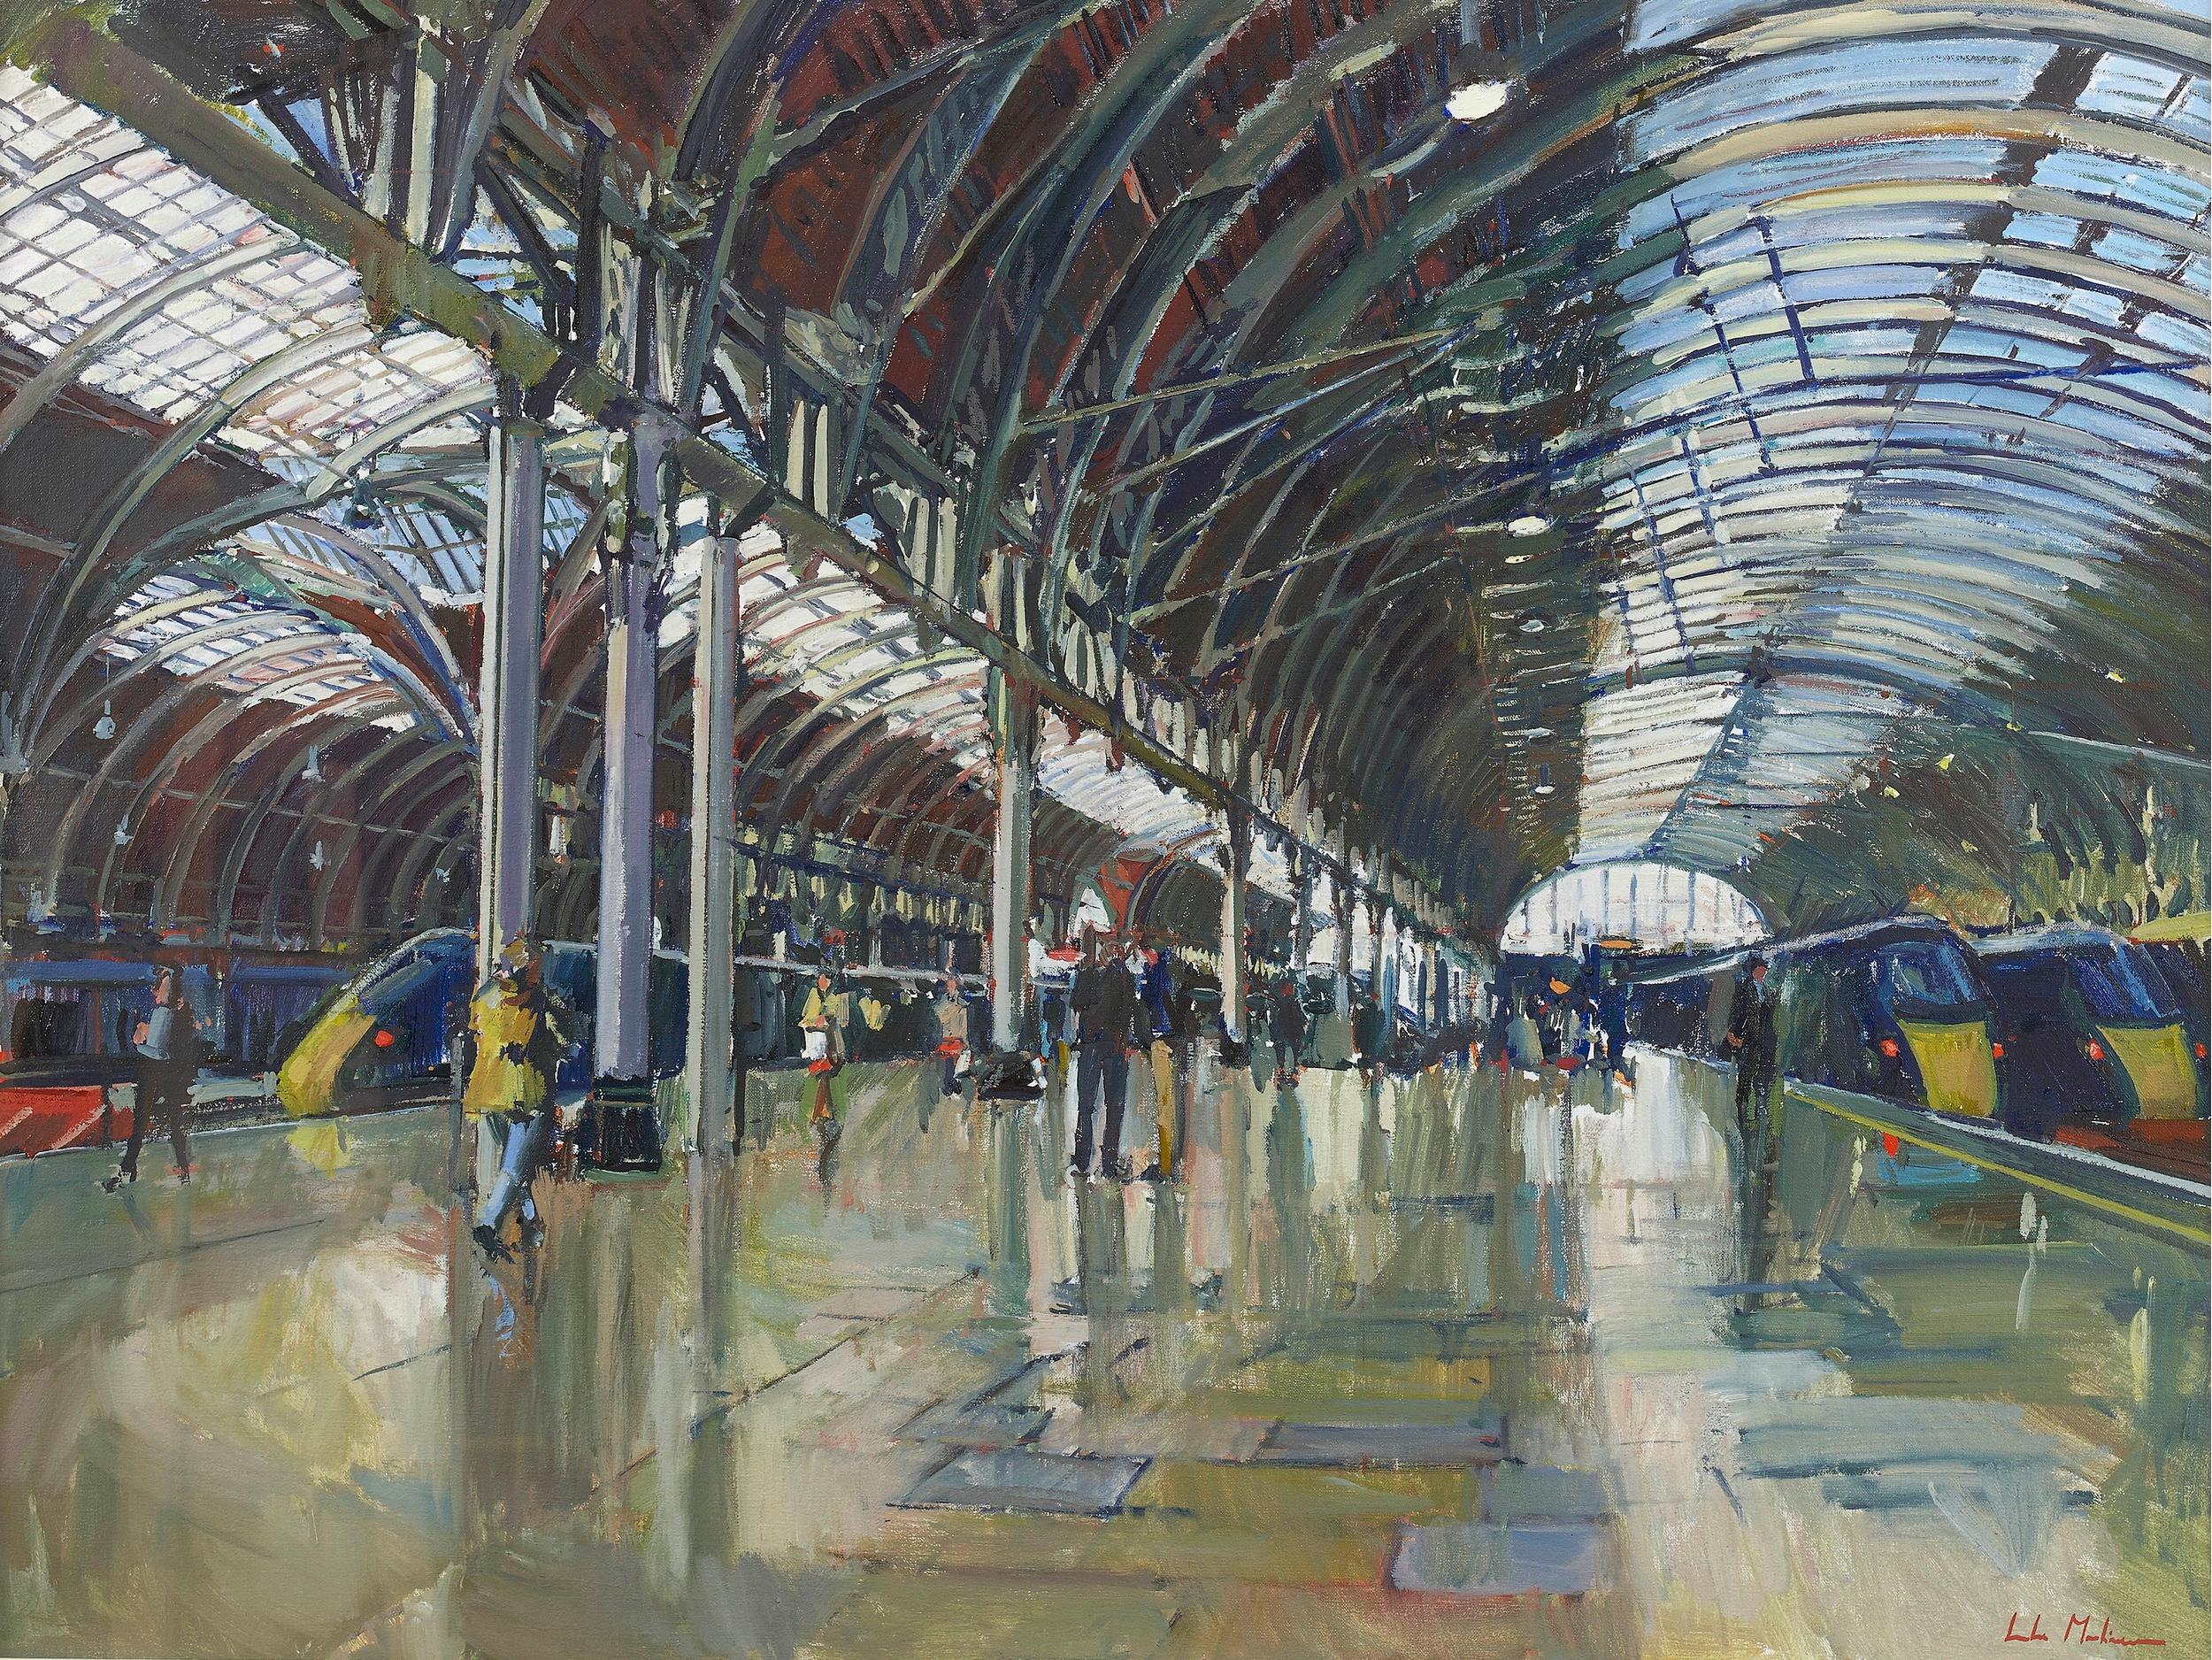 Paddington Station, London - Painting by Luke Martineau